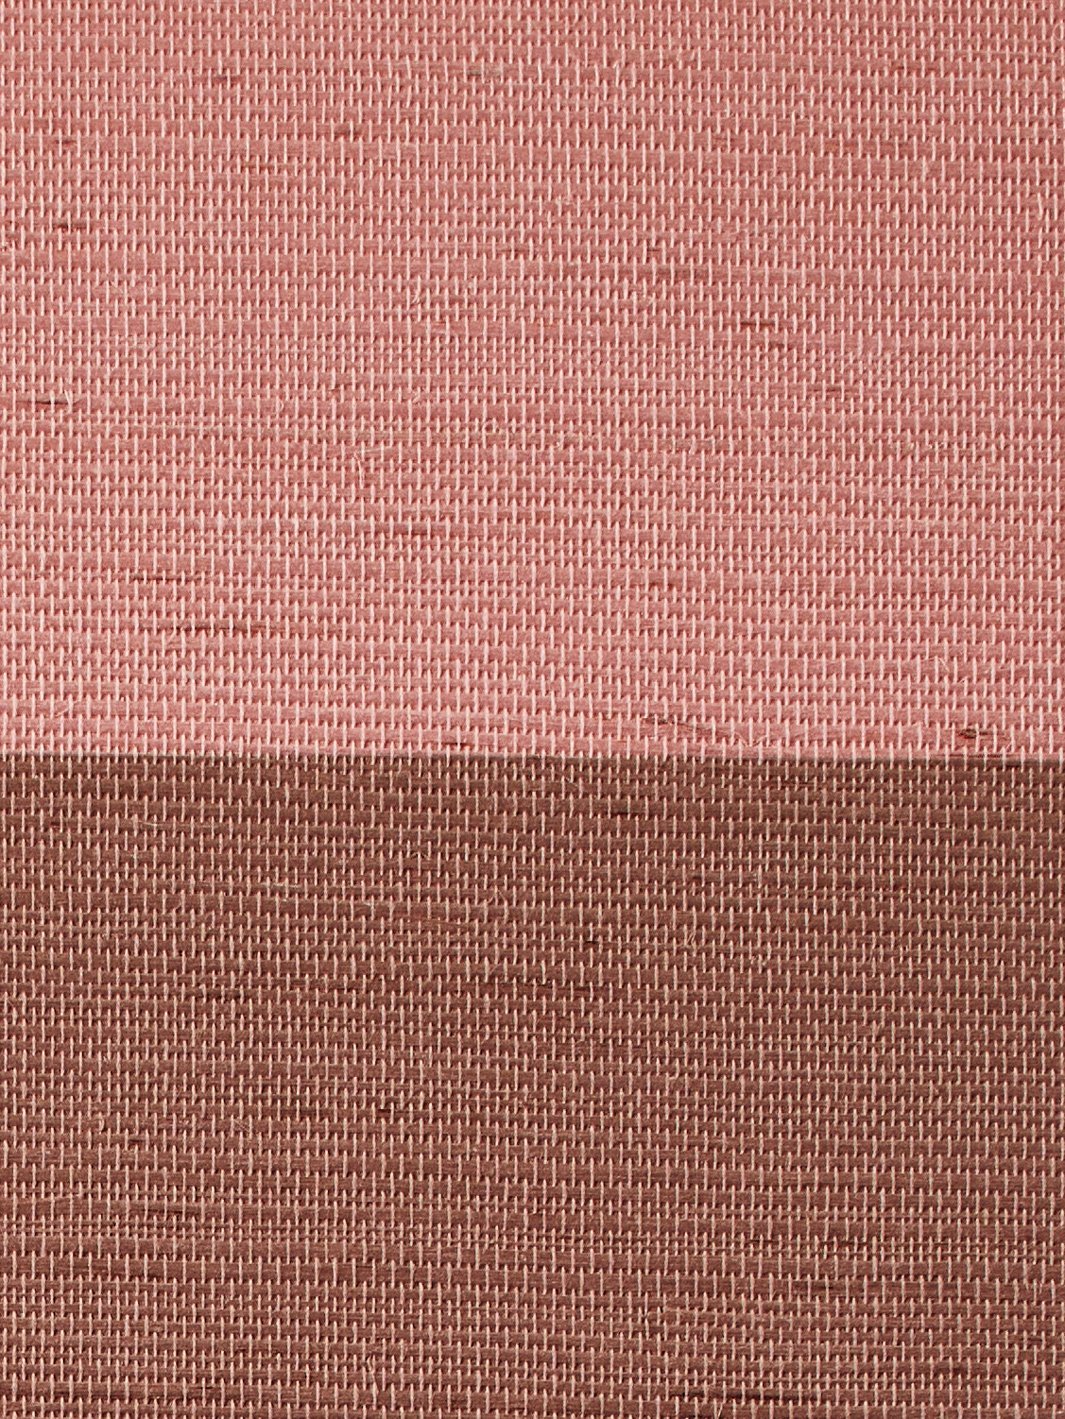 'Wide Stripe Two Color' Grasscloth' Wallpaper by Wallshoppe - Adobe Slip